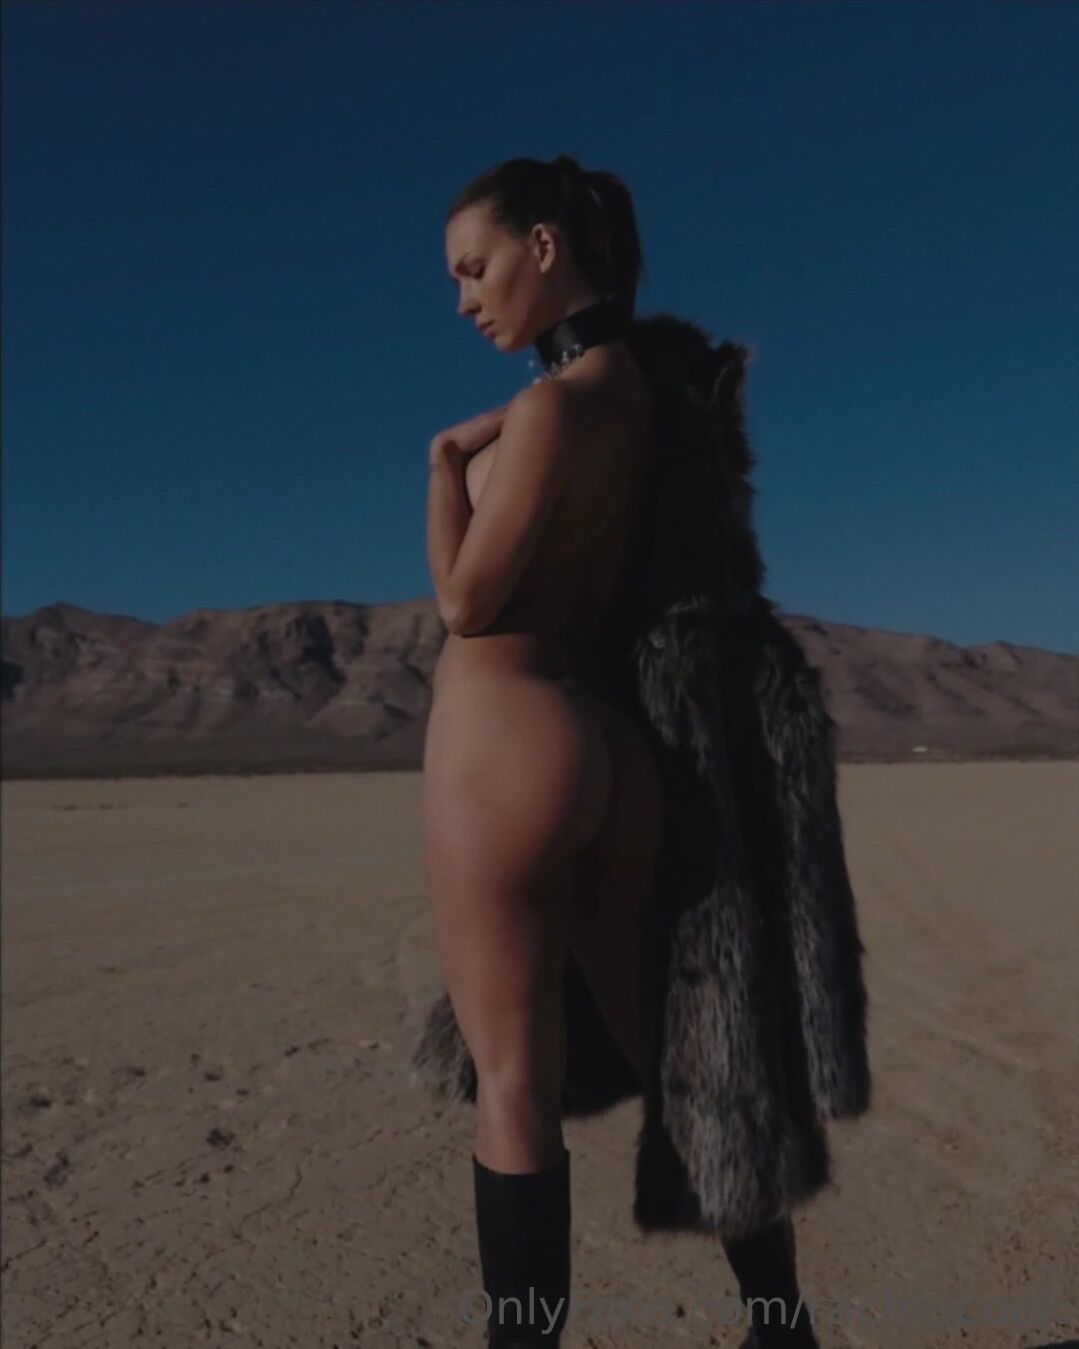 Rachel Cook- Full nude in the desert with fur coat